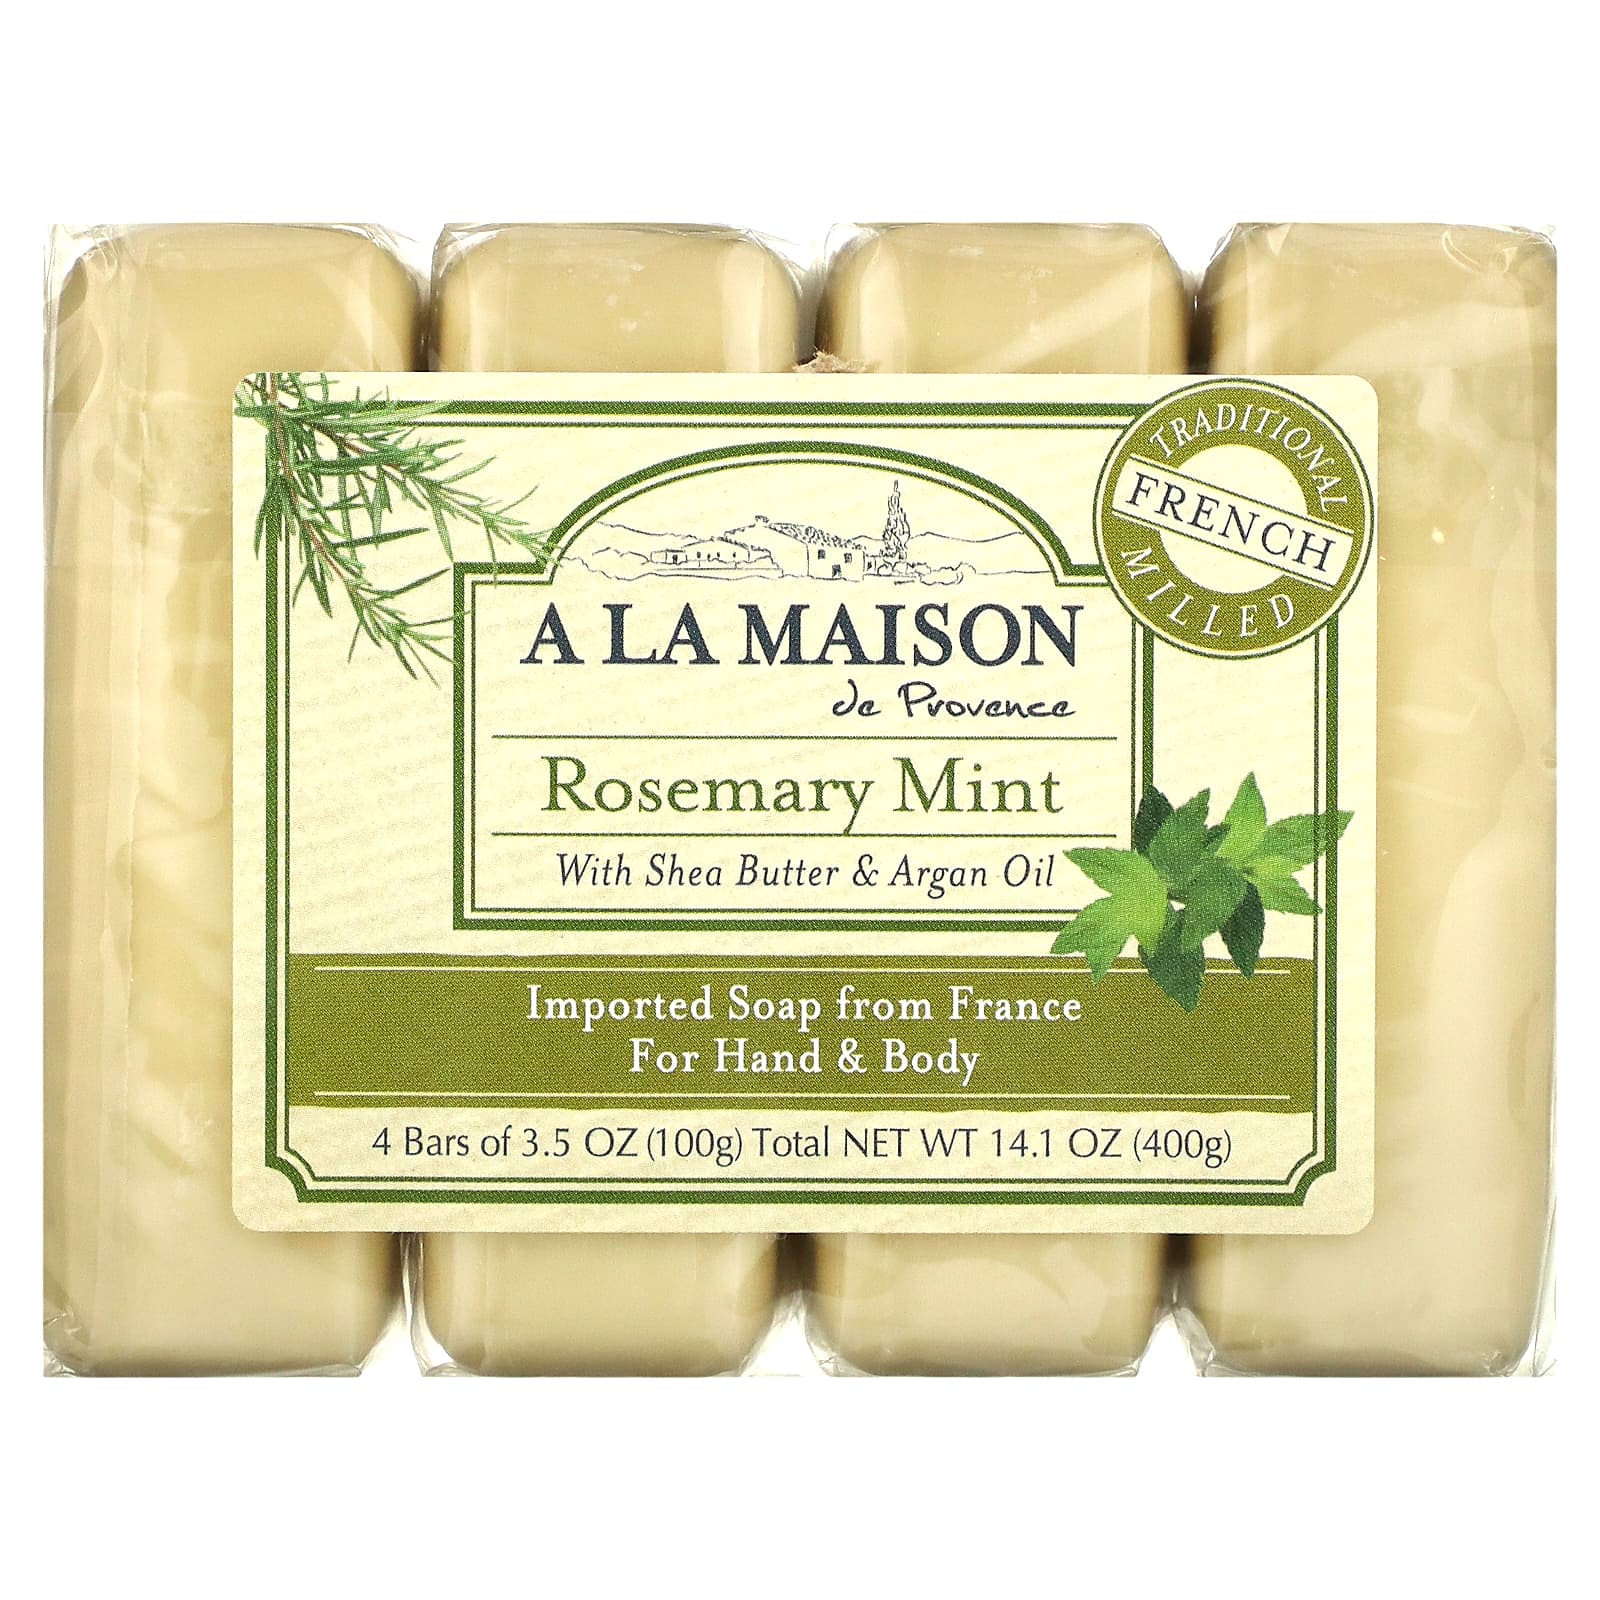 A La Maison de Provence Мыло для рук и тела с ароматом розмарина и мяты 4 куска 3.5 унций (100 г) каждый